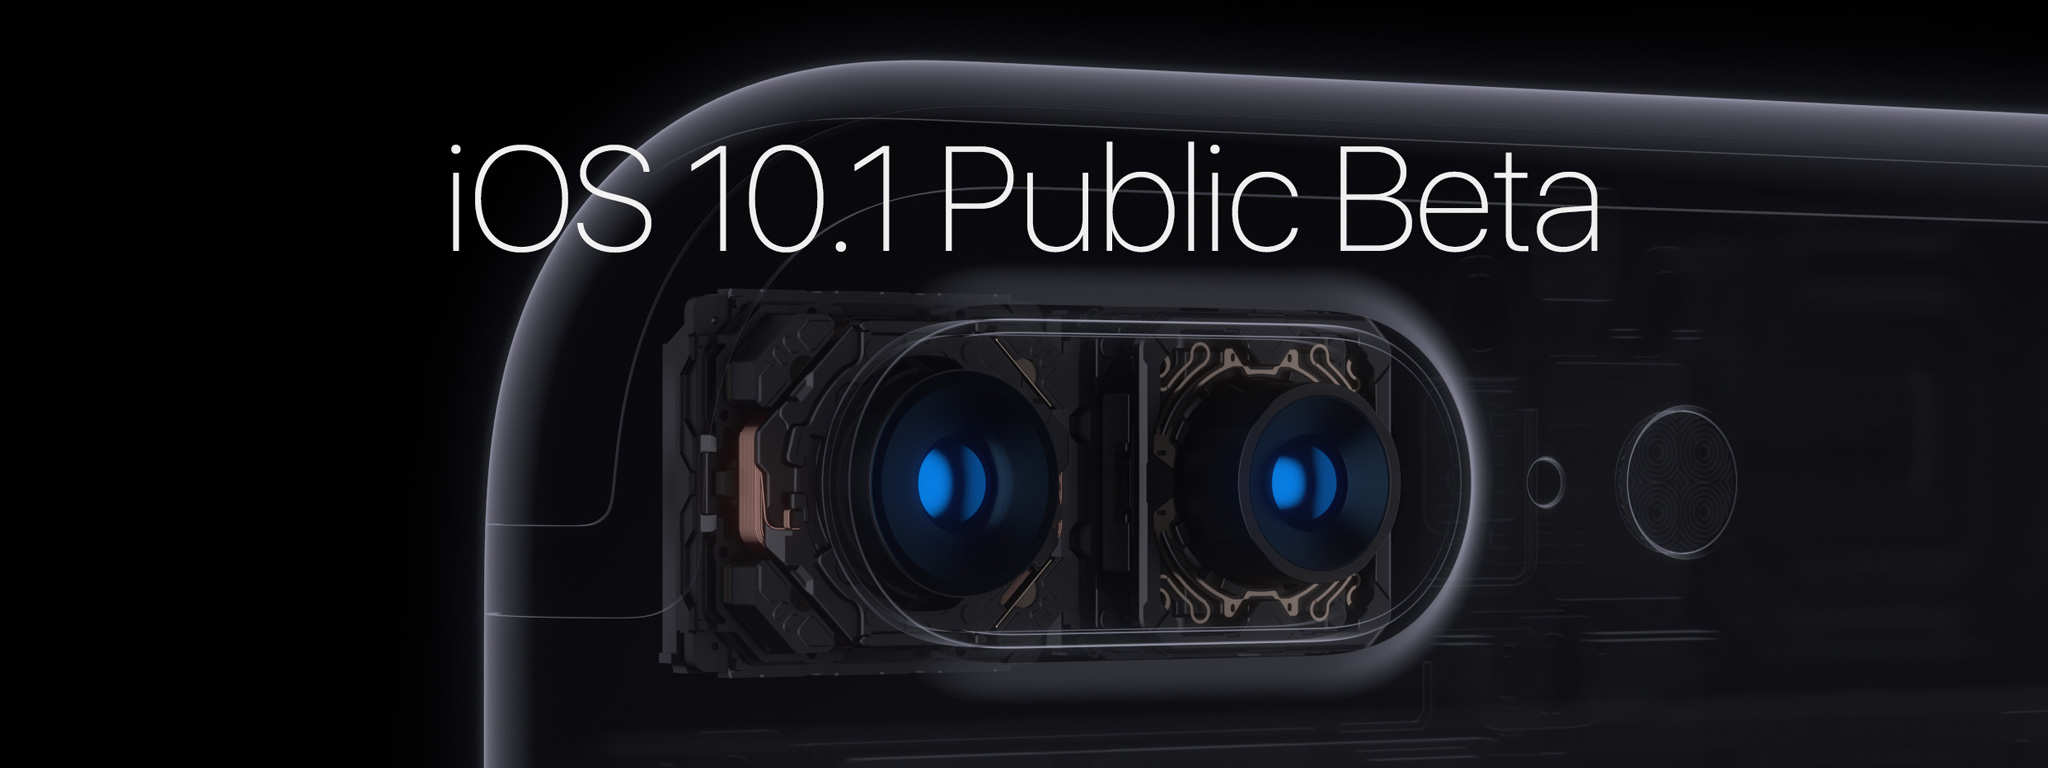 iOS 10.1 Public Beta cũng đã xuất hiện, thêm chụp xóa phông cho 7 Plus, mời anh em tải về